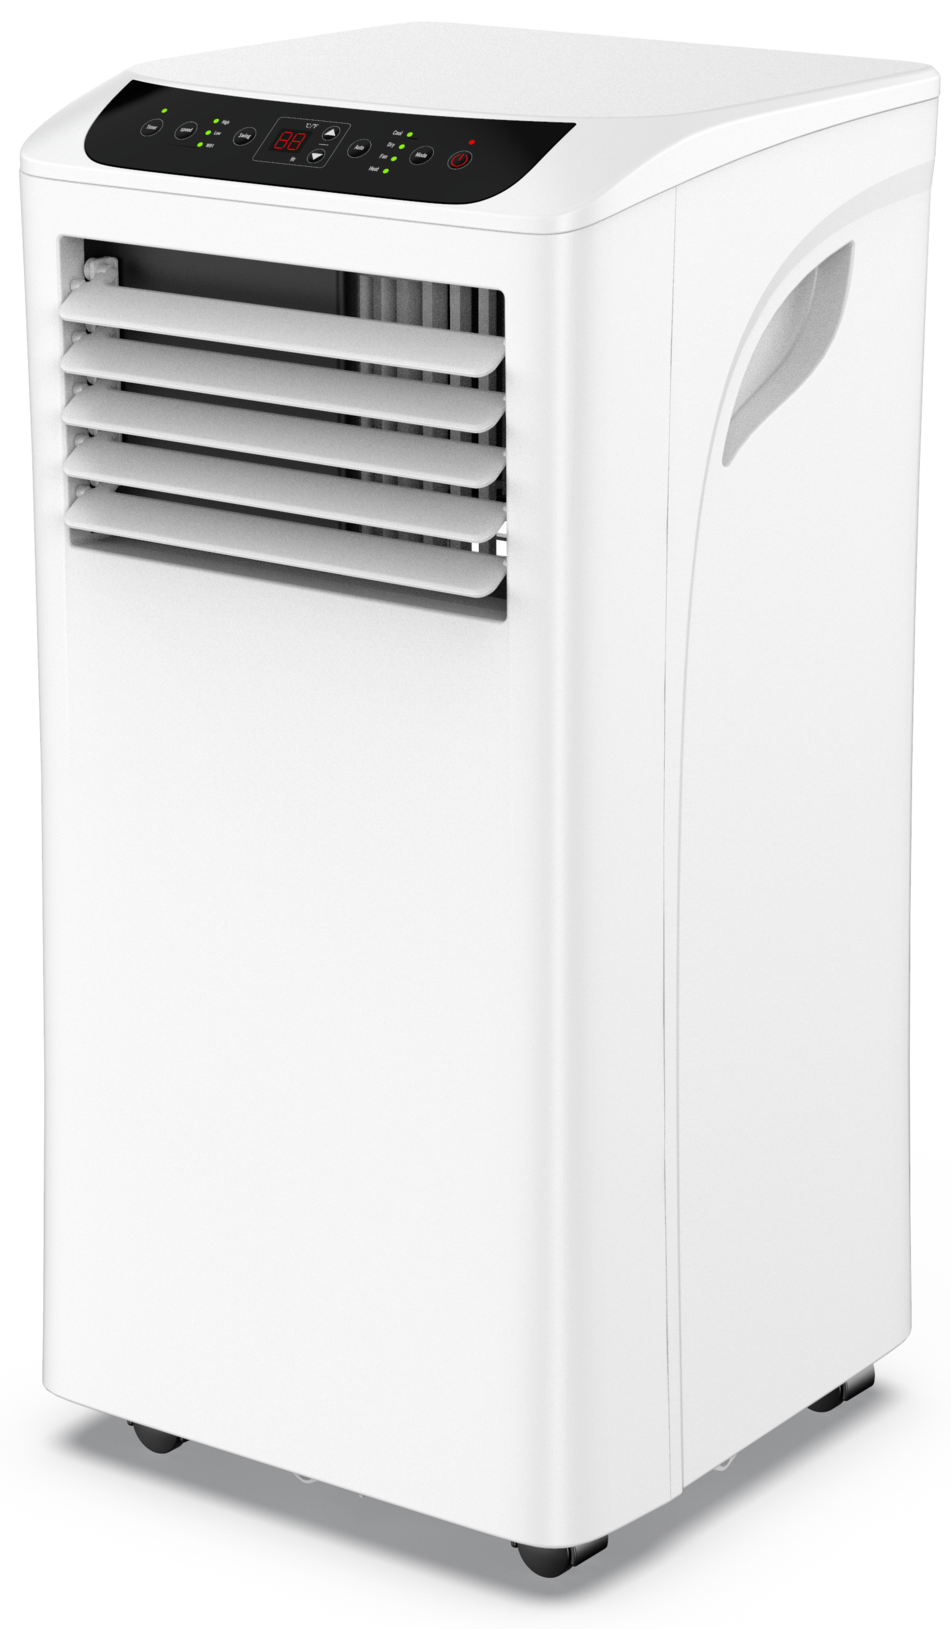 NABO Klimagerät »KA 9003«